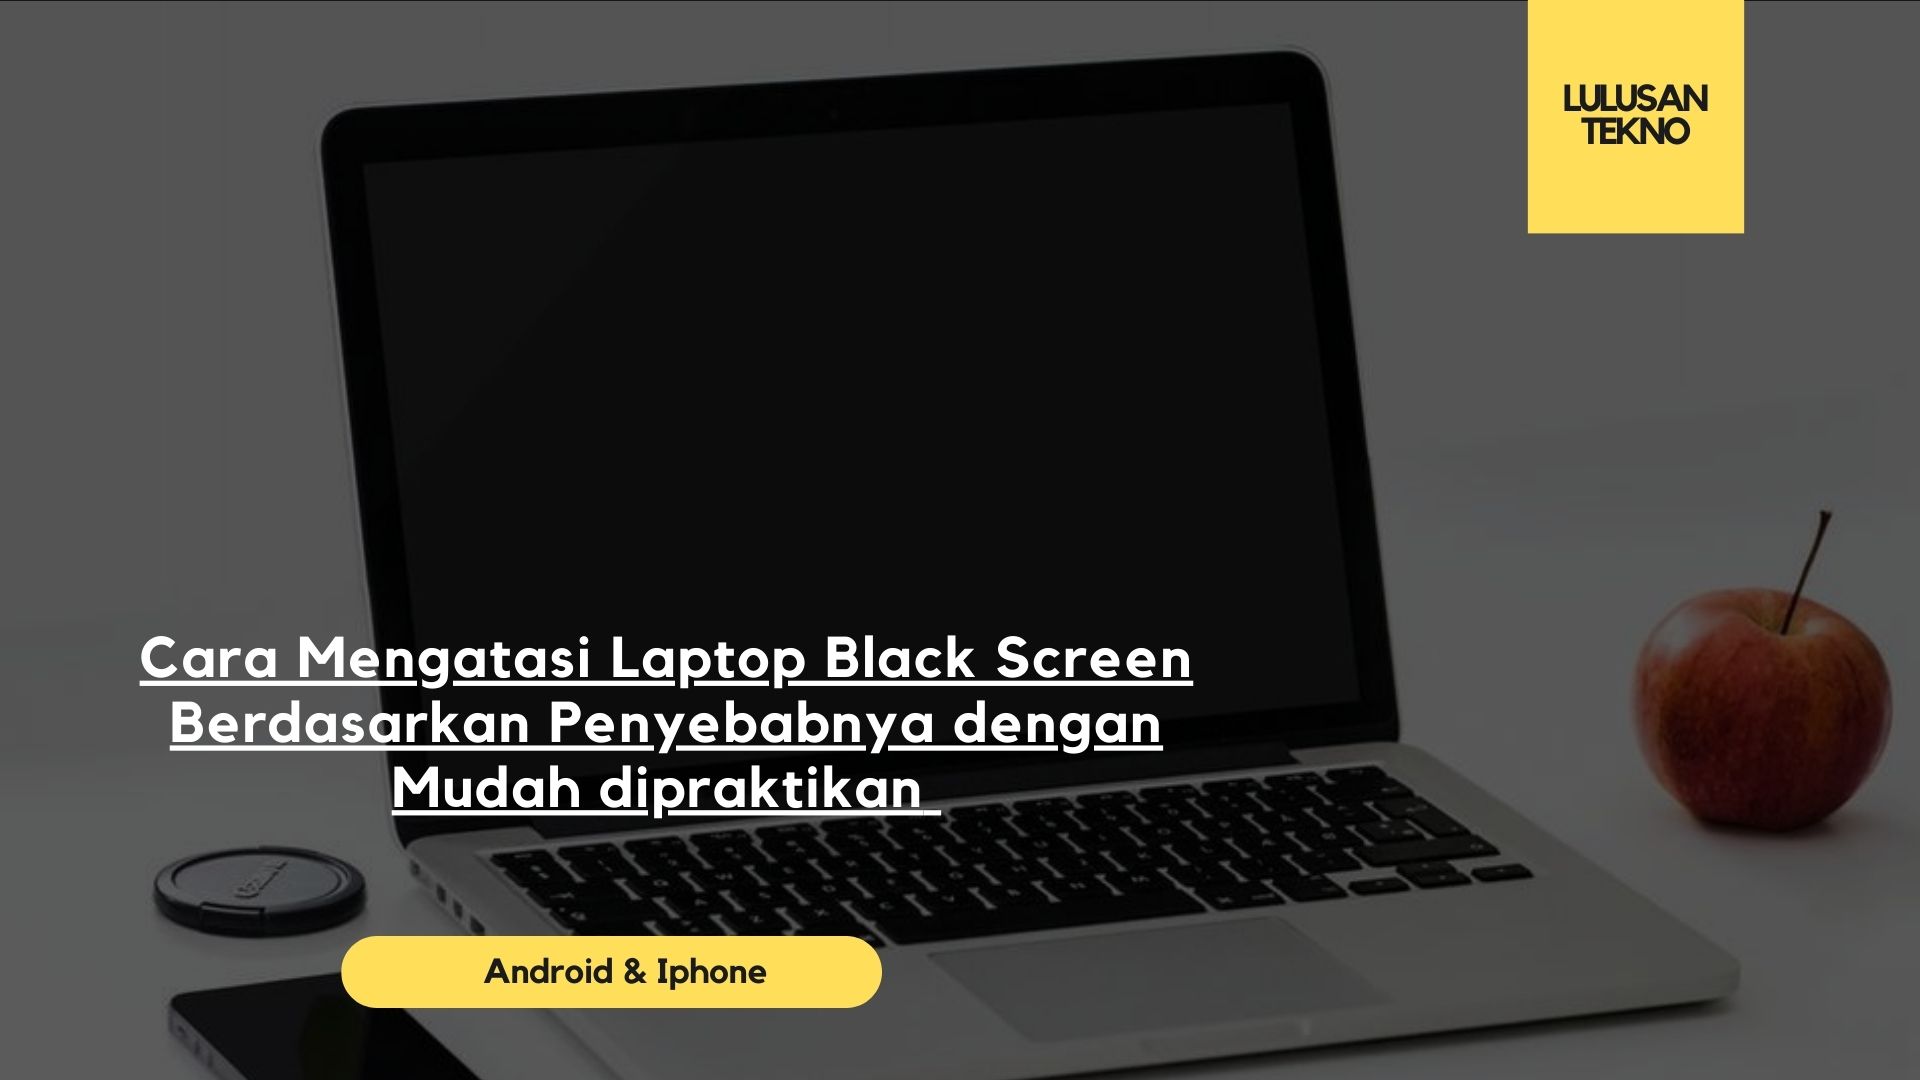 Cara Mengatasi Laptop Black Screen Berdasarkan Penyebabnya dengan Mudah dipraktikan